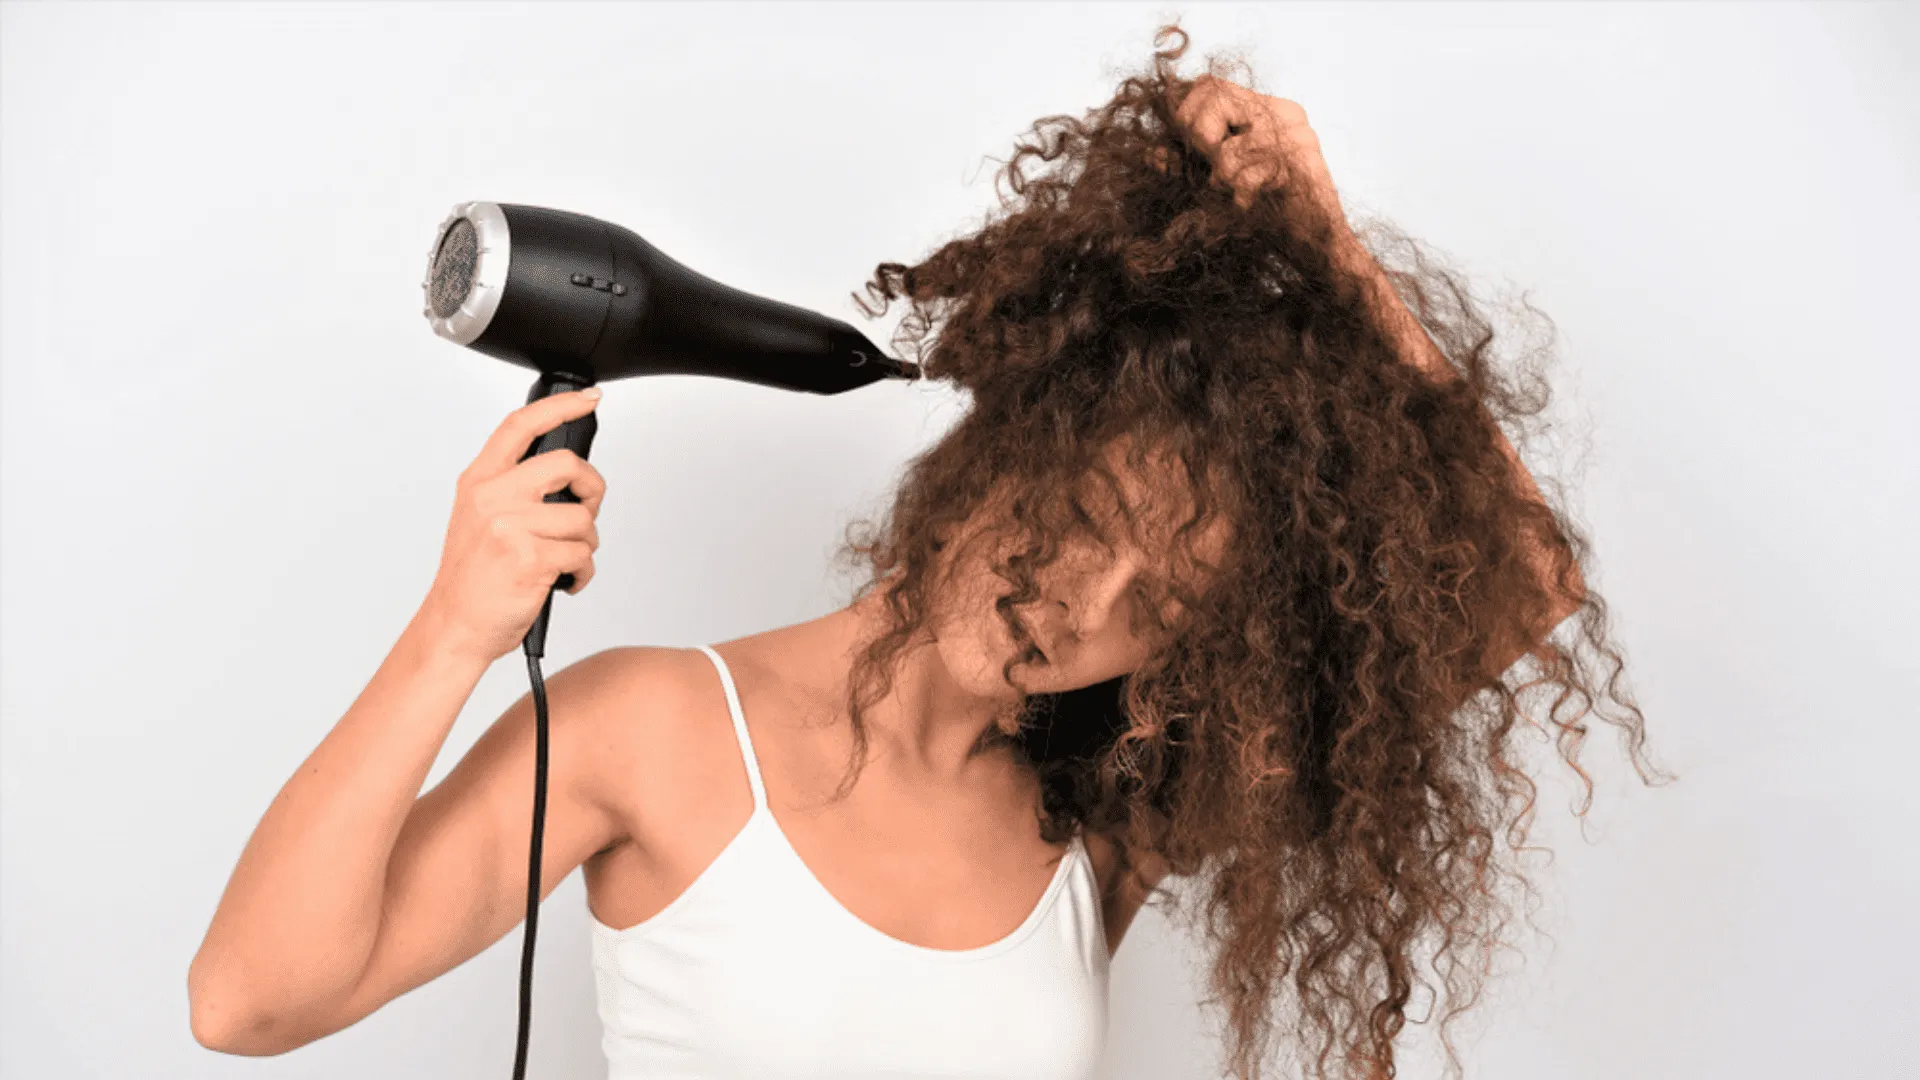 Cabeleireiro Hair Secador Cabelo Profissional 5000w 110V em Promoção na  Americanas